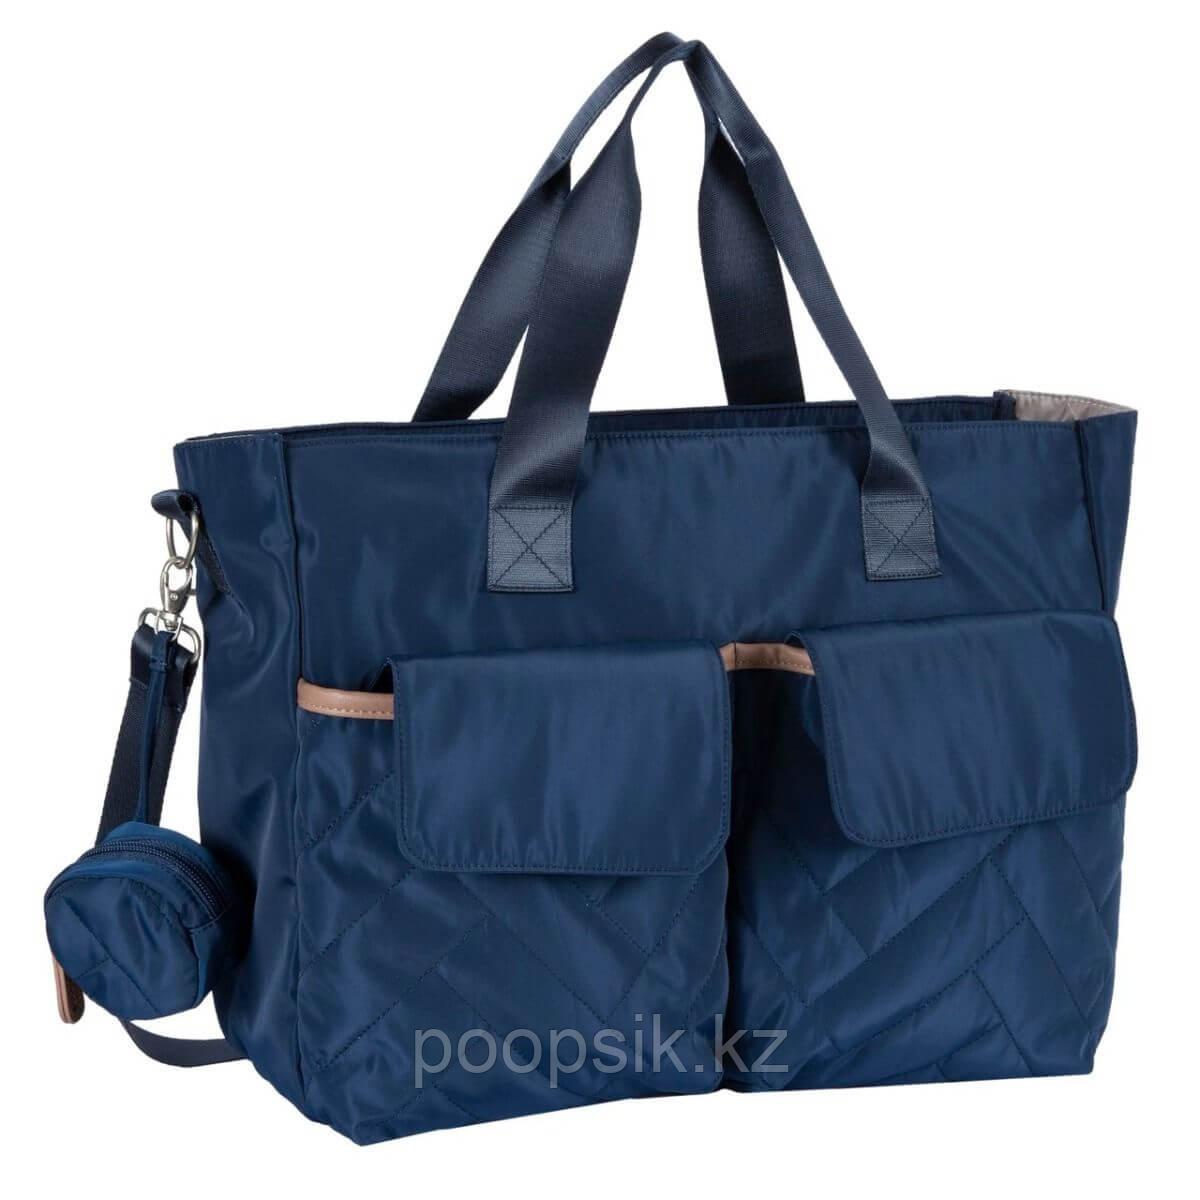 Дорожная сумка для мамы синяя 2020 Осень-Зима, Chicco